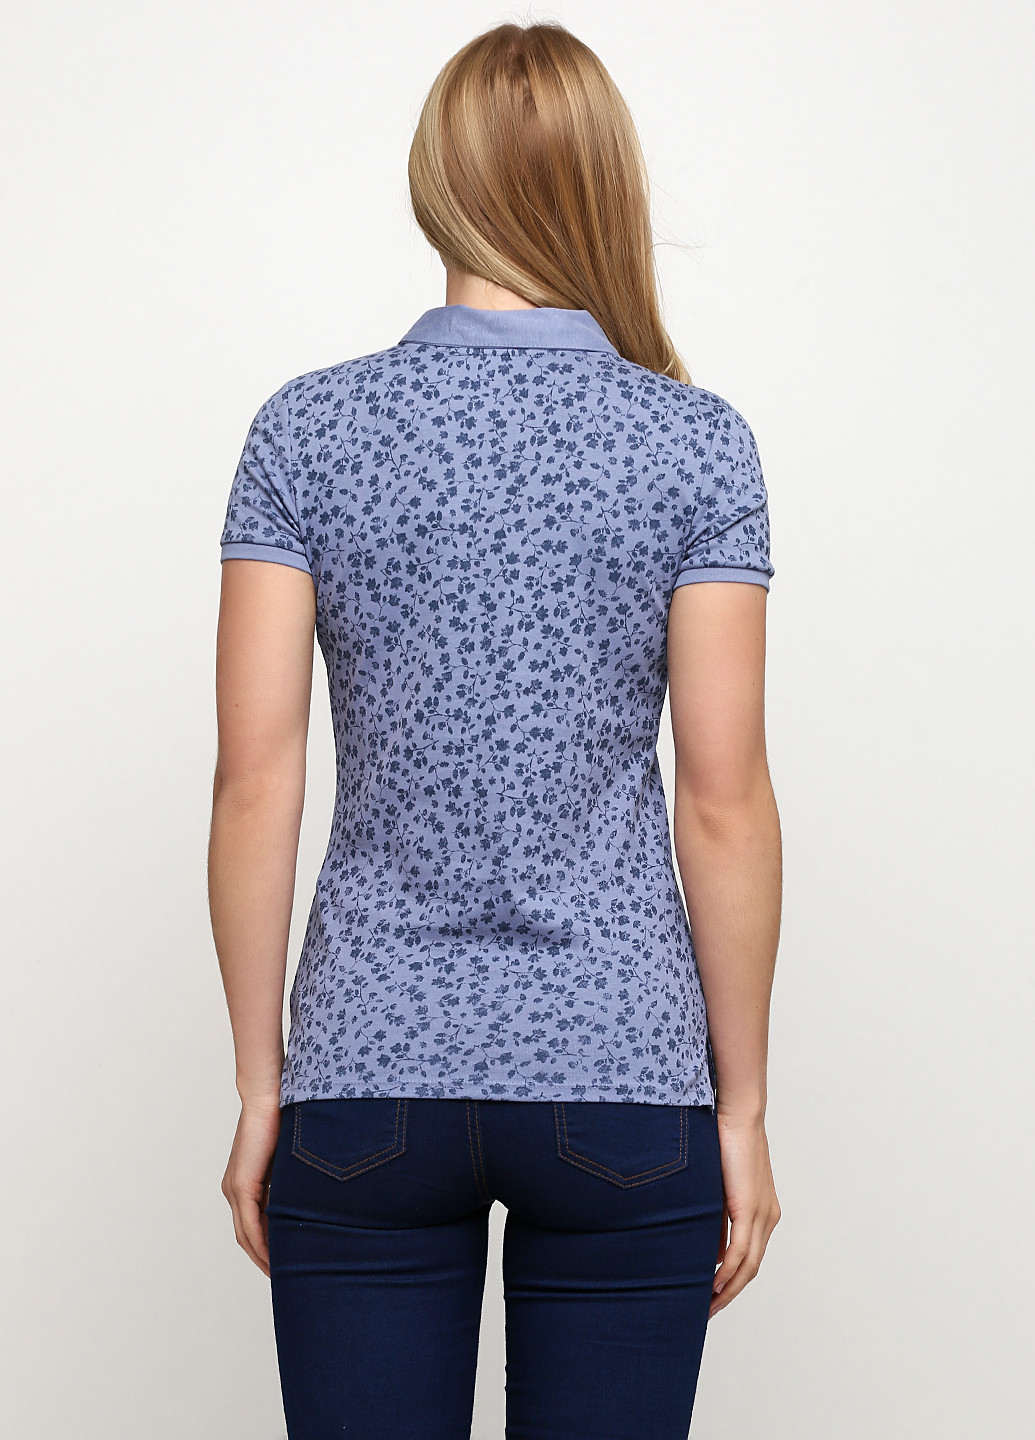 Сиреневая женская футболка-поло C&A с цветочным принтом